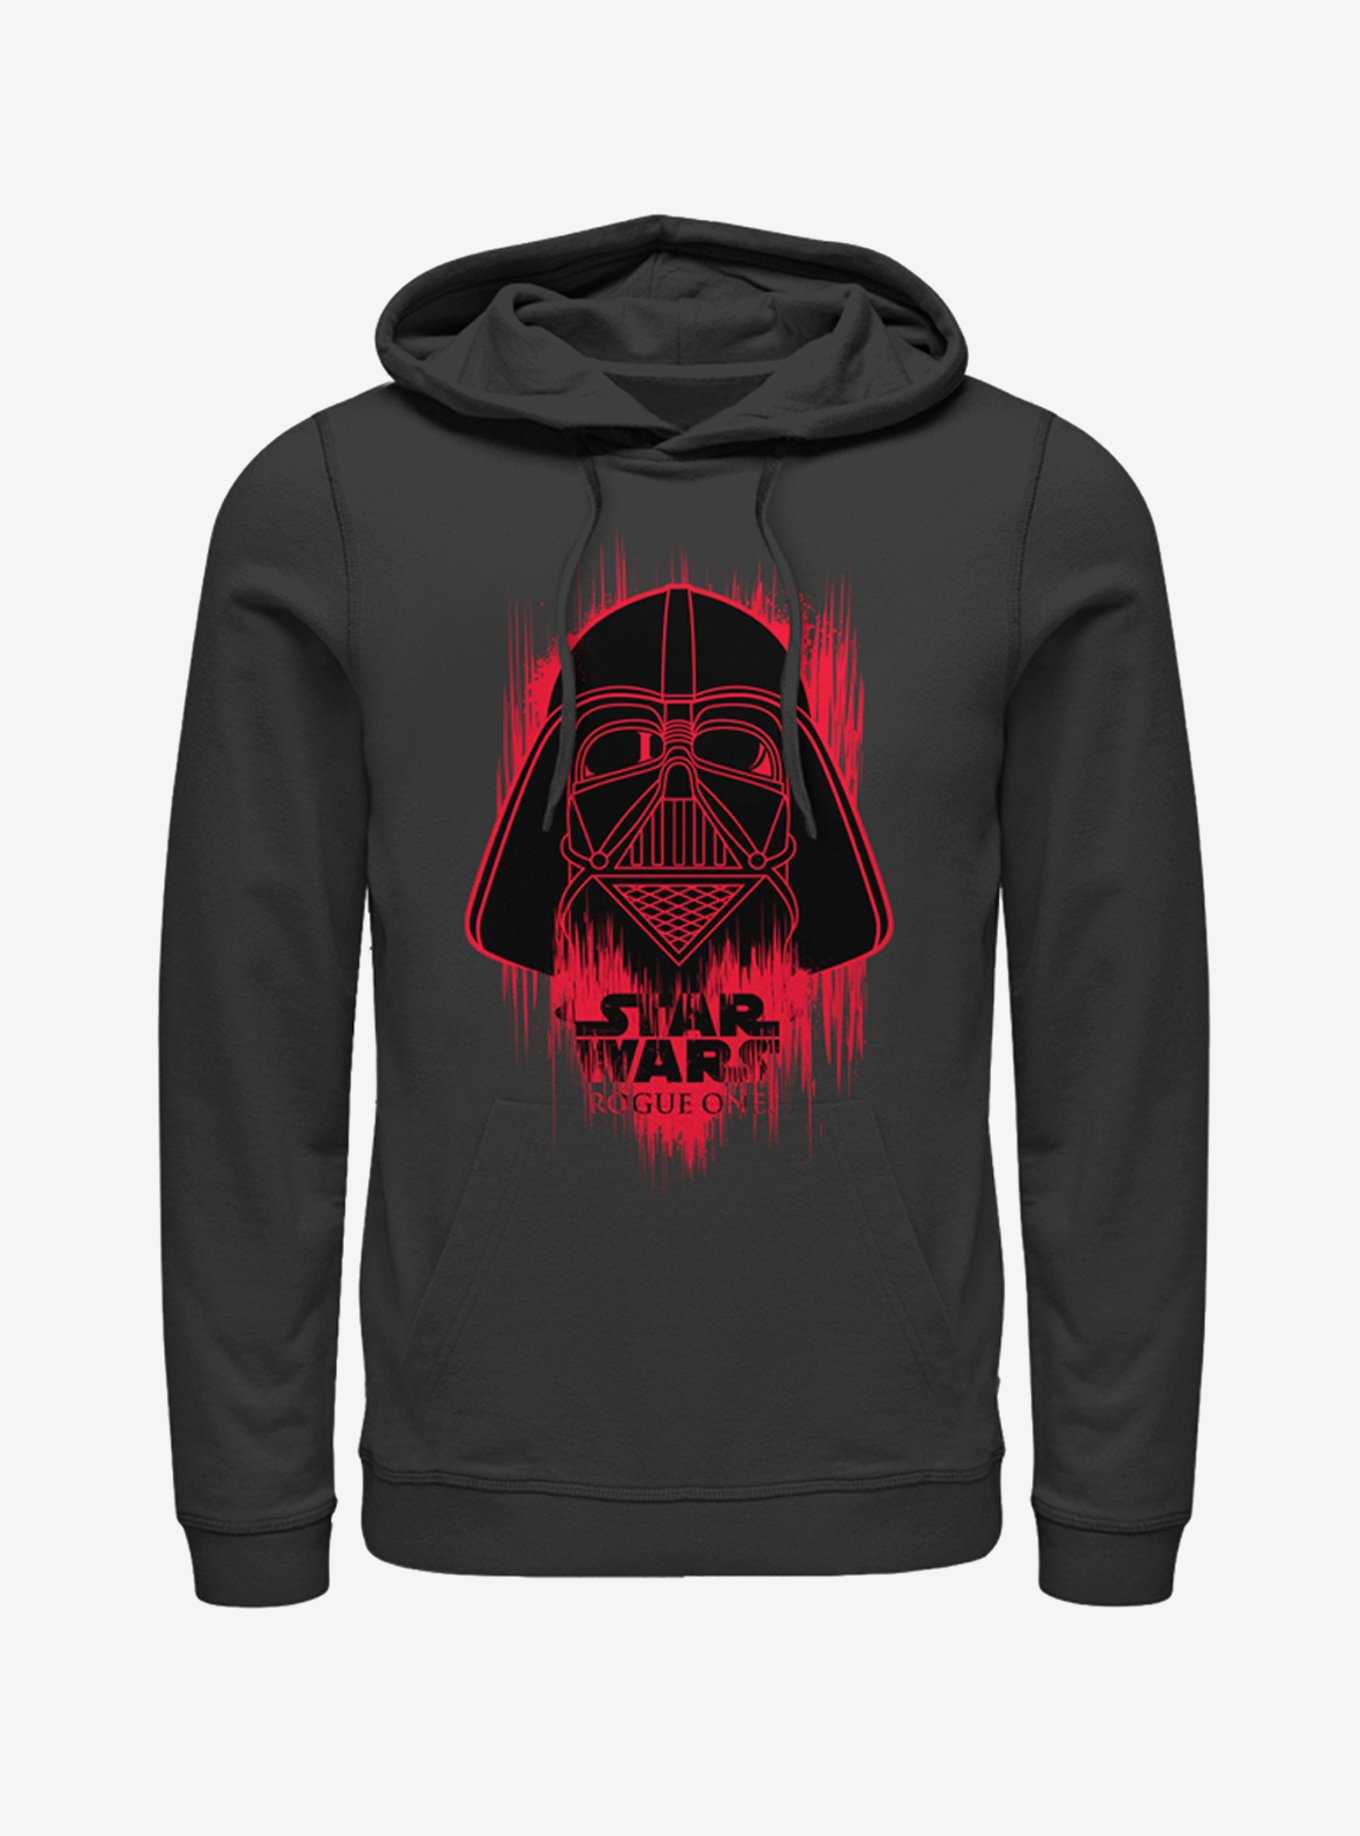 Star Wars Darth Vader Helmet Spray Paint Hoodie, , hi-res